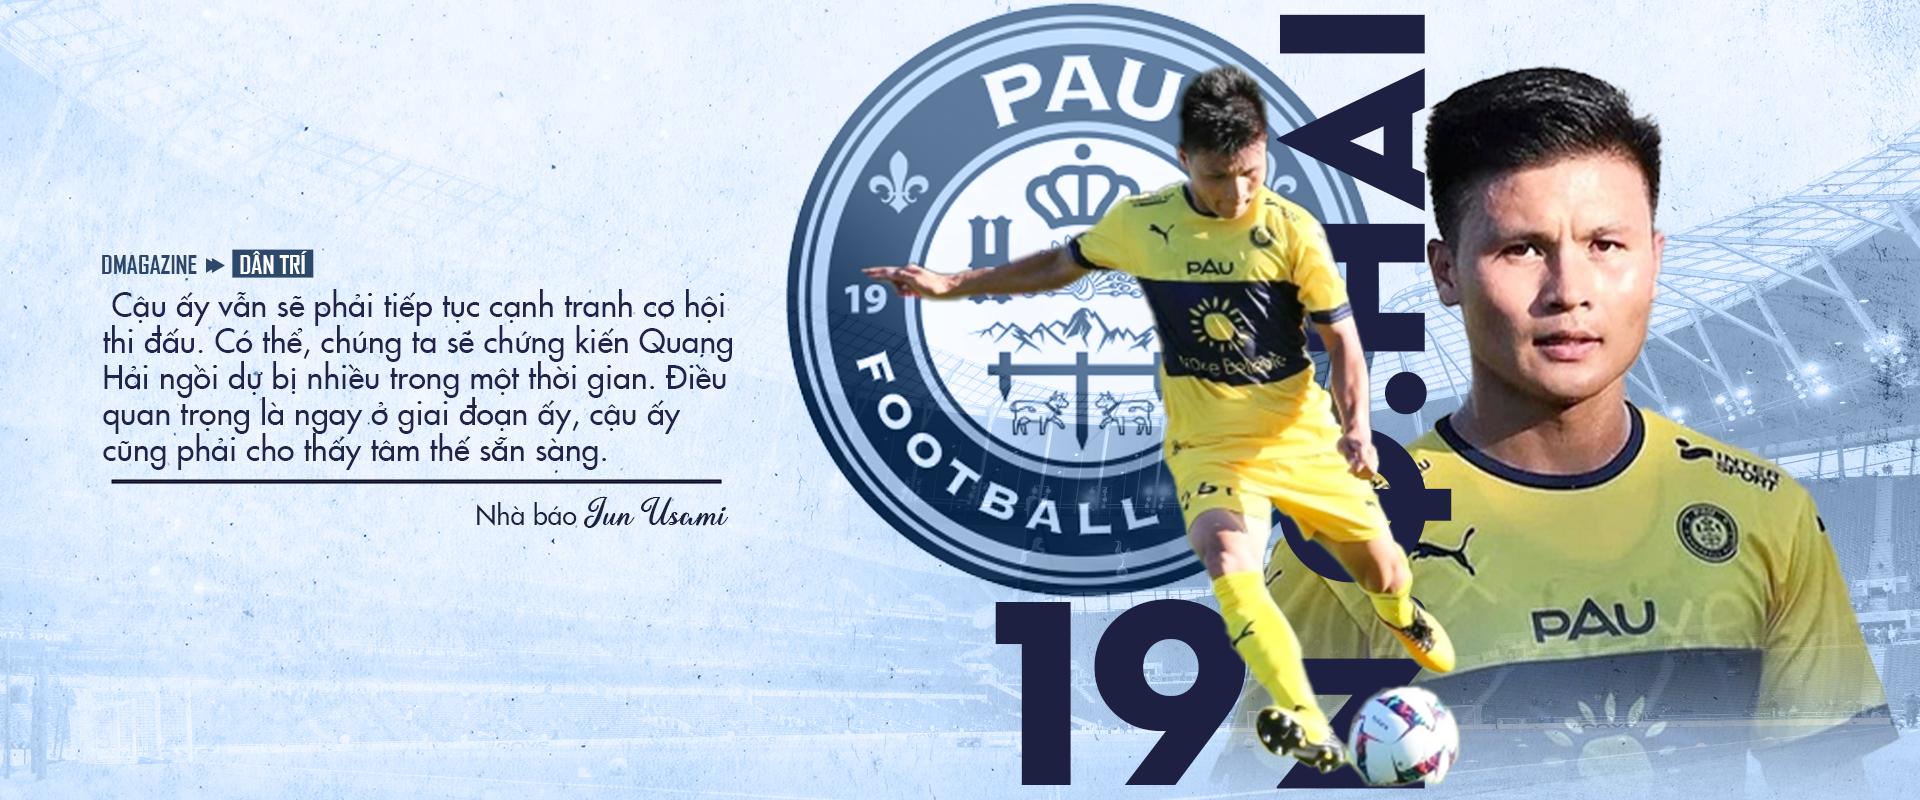 Nhà báo Nhật Bản: Quang Hải nên rời Pau FC trong 3 tháng nữa - 9